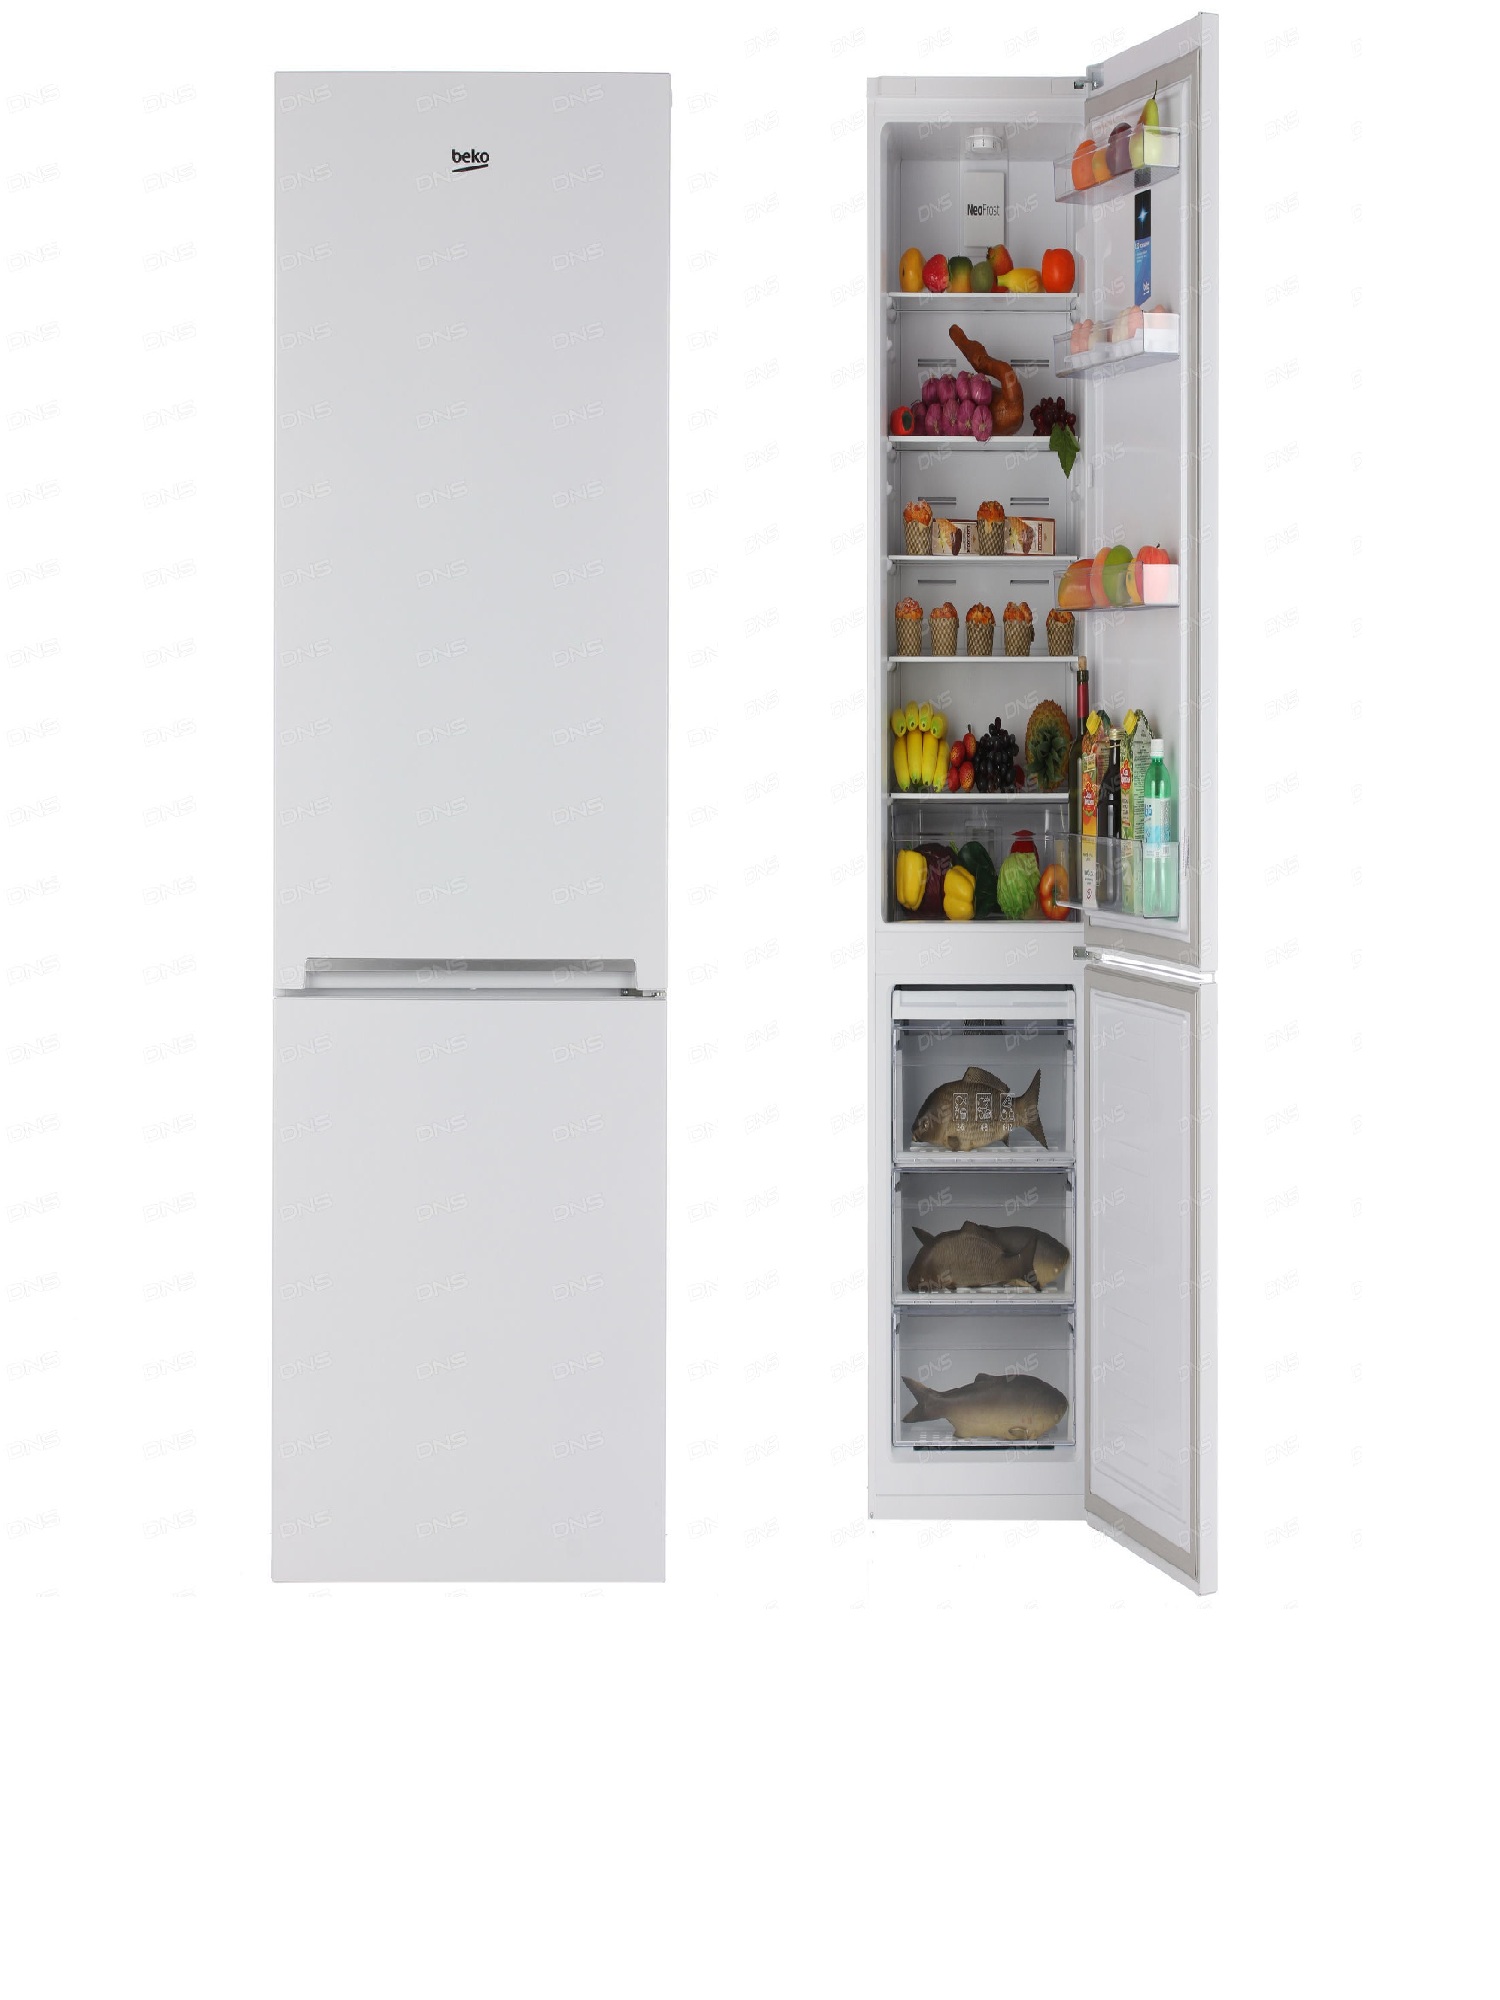 холодильник beko rcnk356k00w, купить в Красноярске холодильник beko rcnk356k00w,  купить в Красноярске дешево холодильник beko rcnk356k00w, купить в Красноярске минимальной цене холодильник beko rcnk356k00w